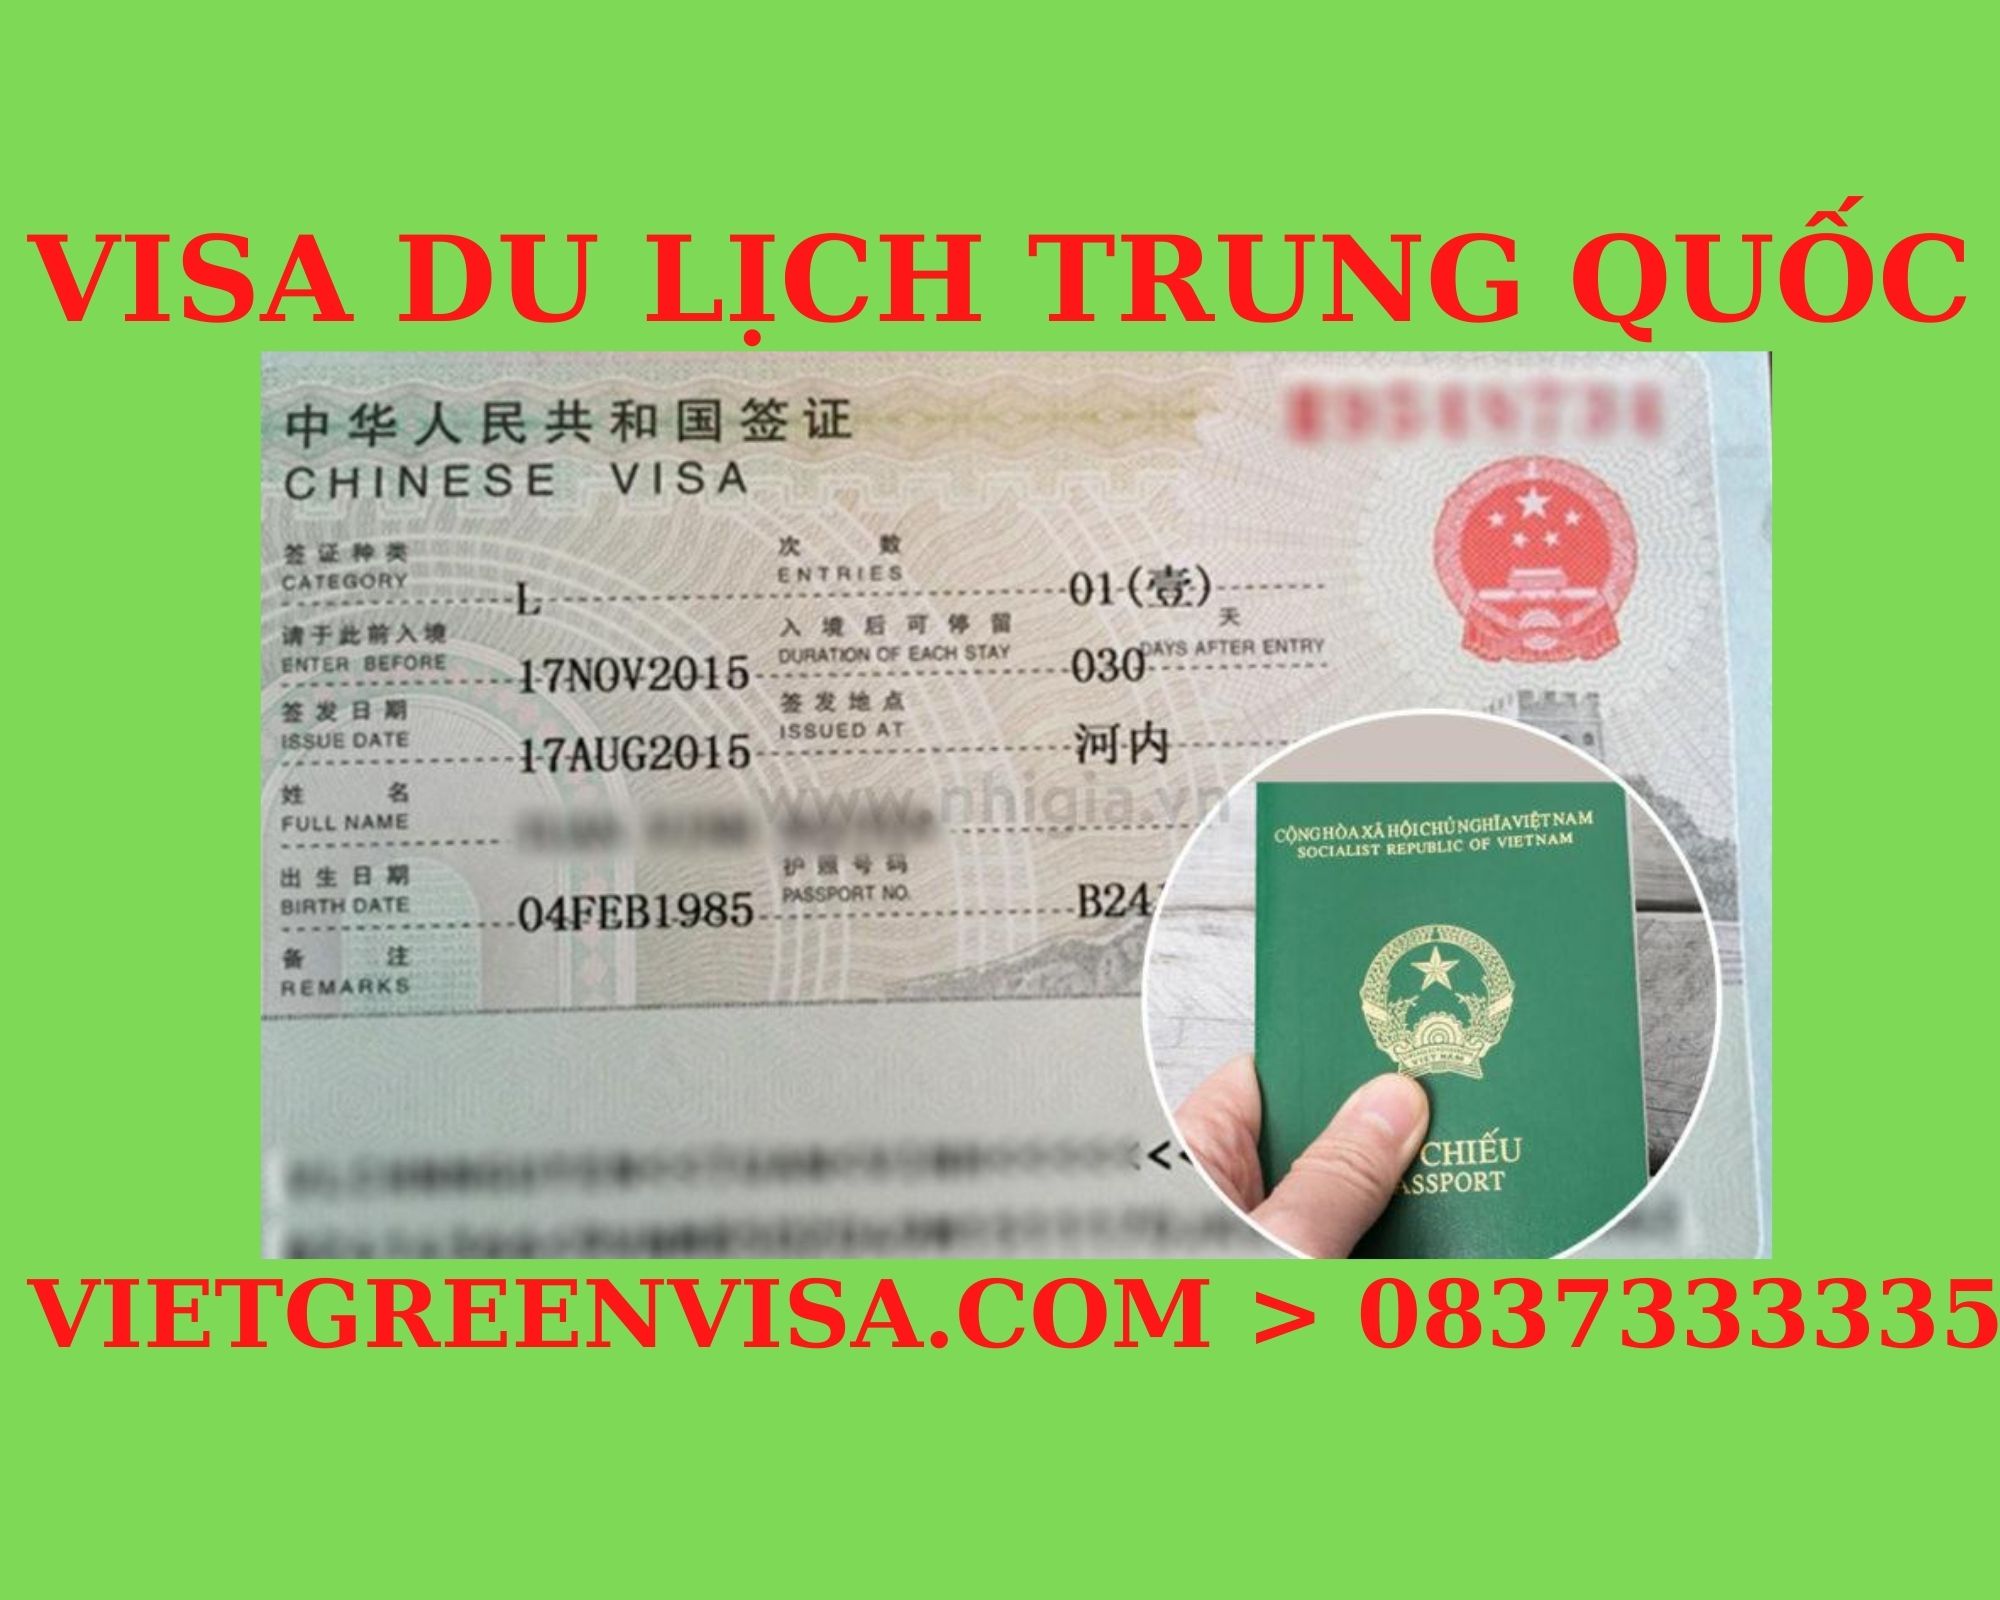 Dịch vụ visa Trung Quốc đi du lịch uy tín. Du Lịch Xanh